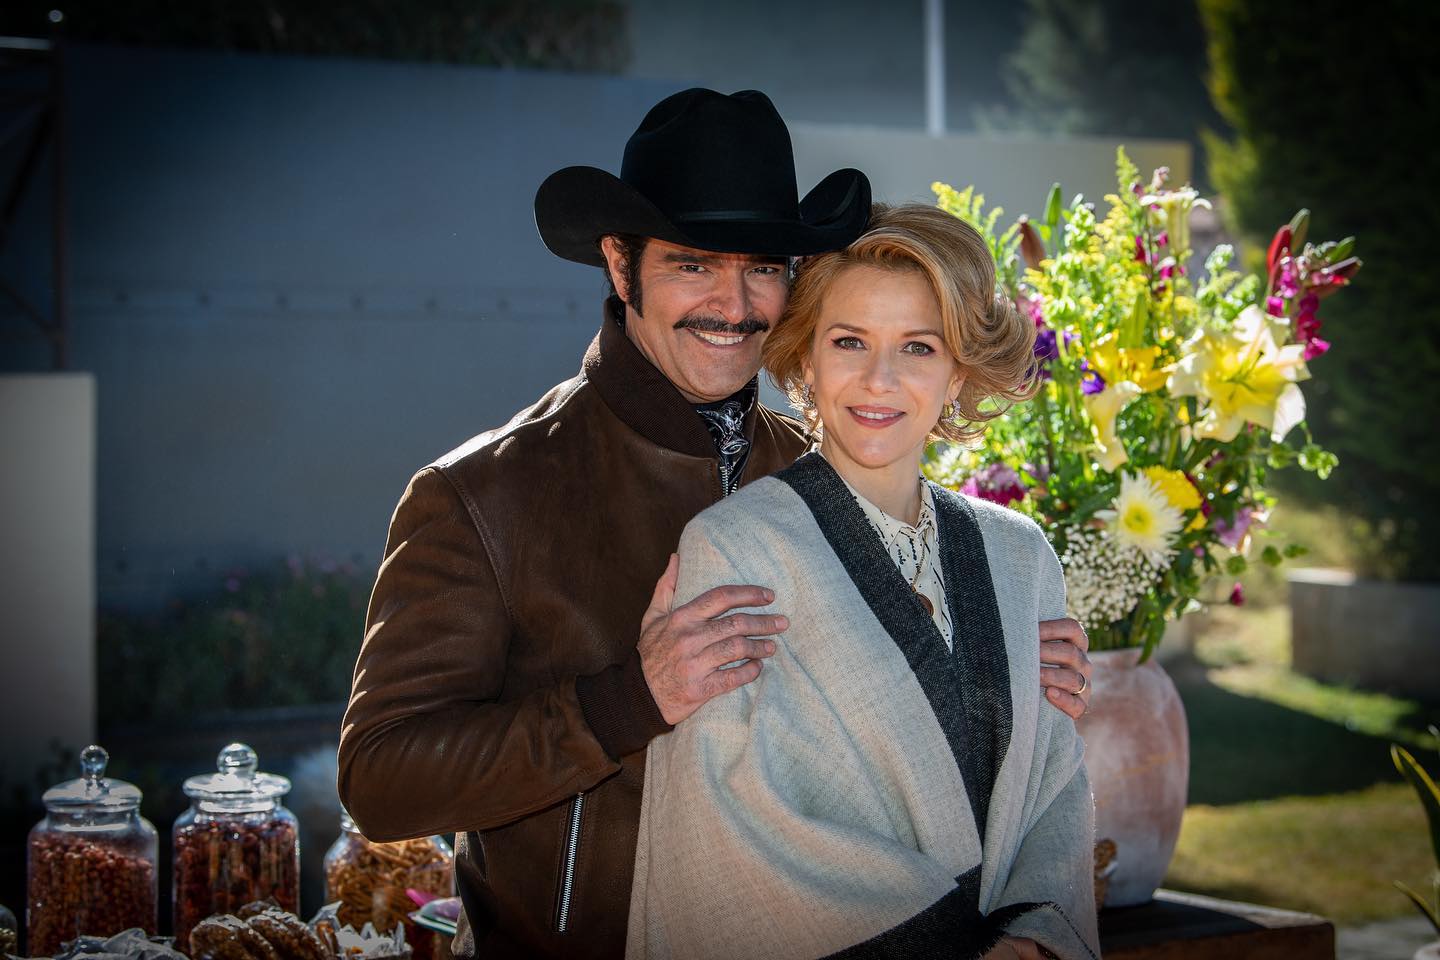 Pablo Montero interpreta a Vicente Fernández e Iliana Fox a su María del Refugio abarca, también conocida como "Doña Cuquita". (Foto: Instagram/@elultimoreymx)